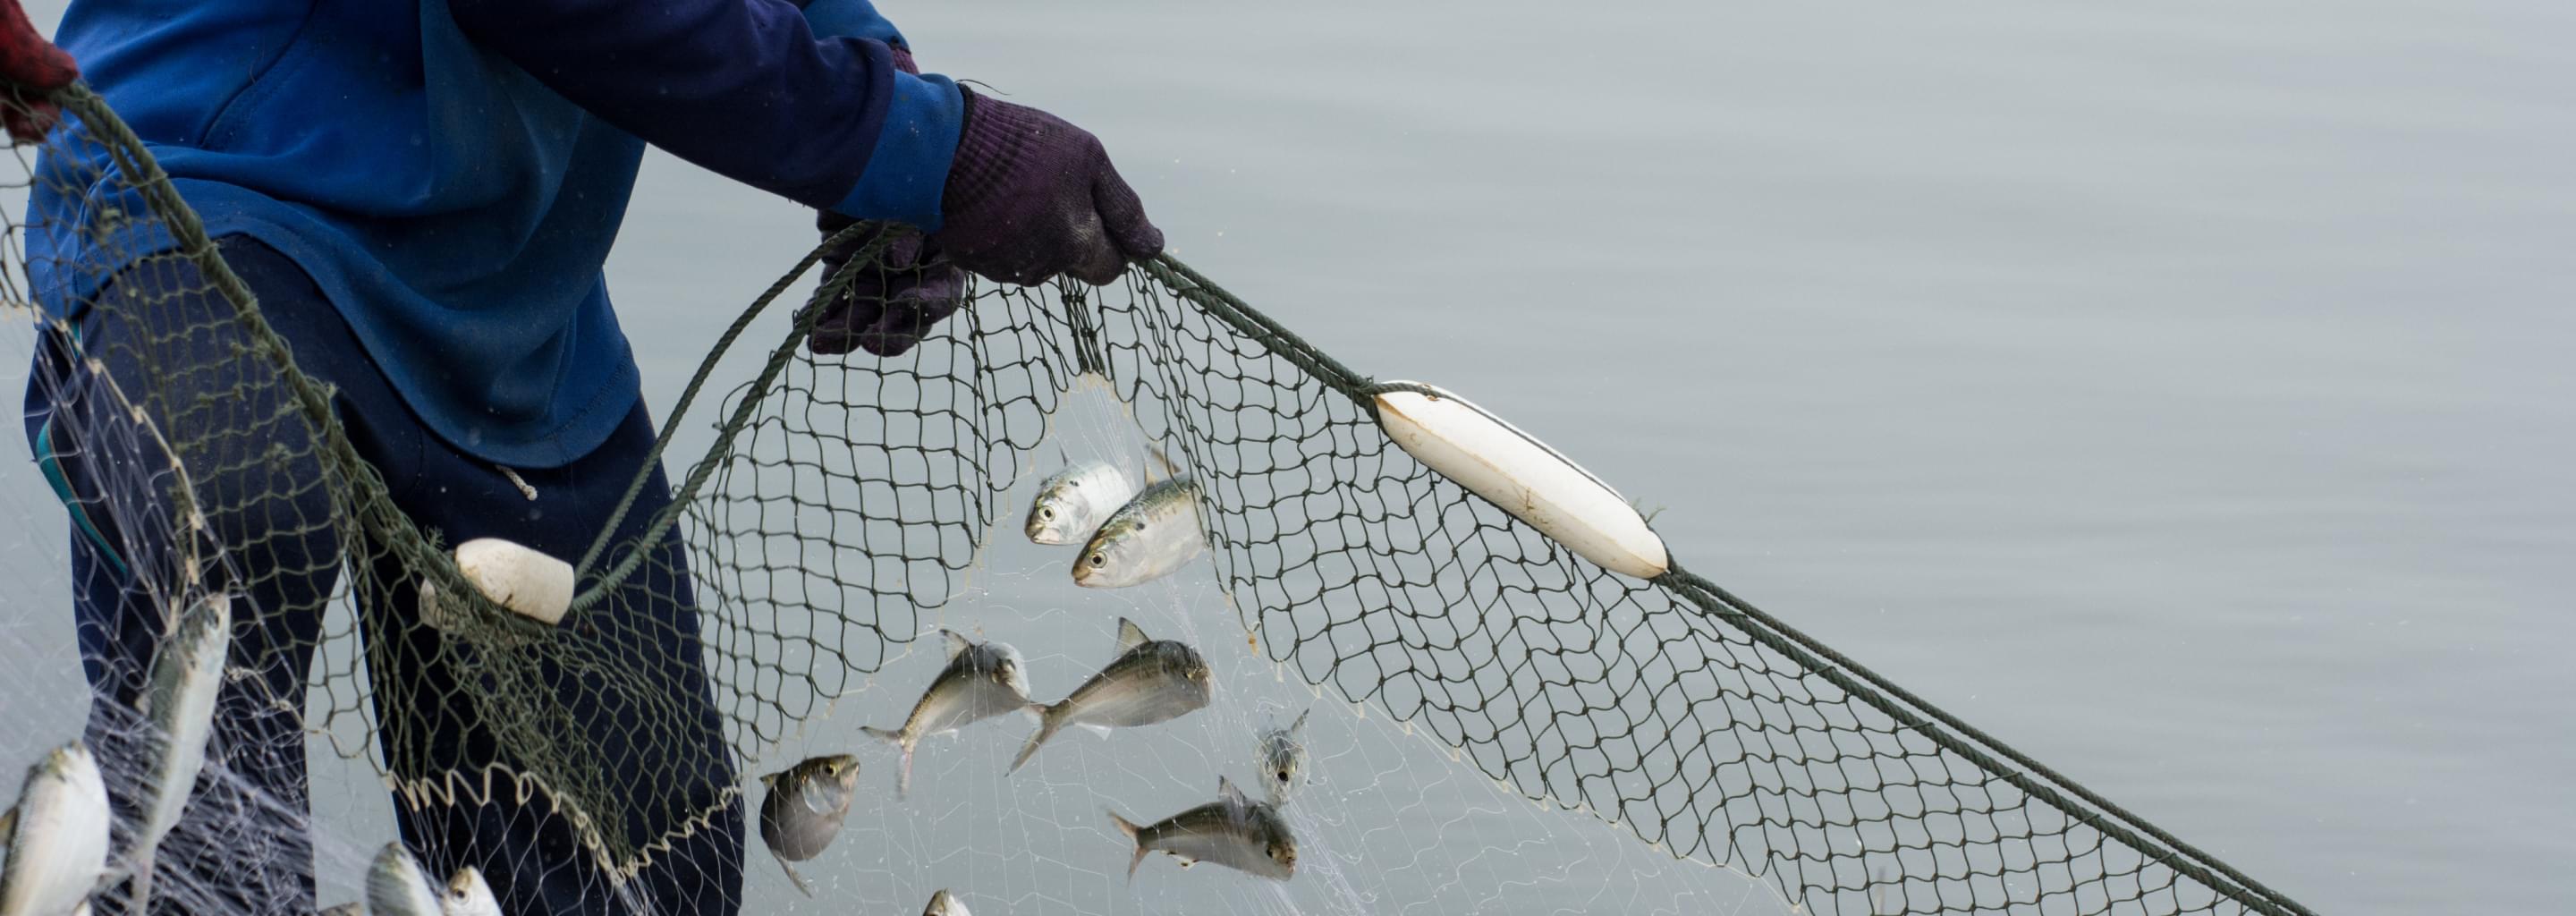 Рыбак держит сети